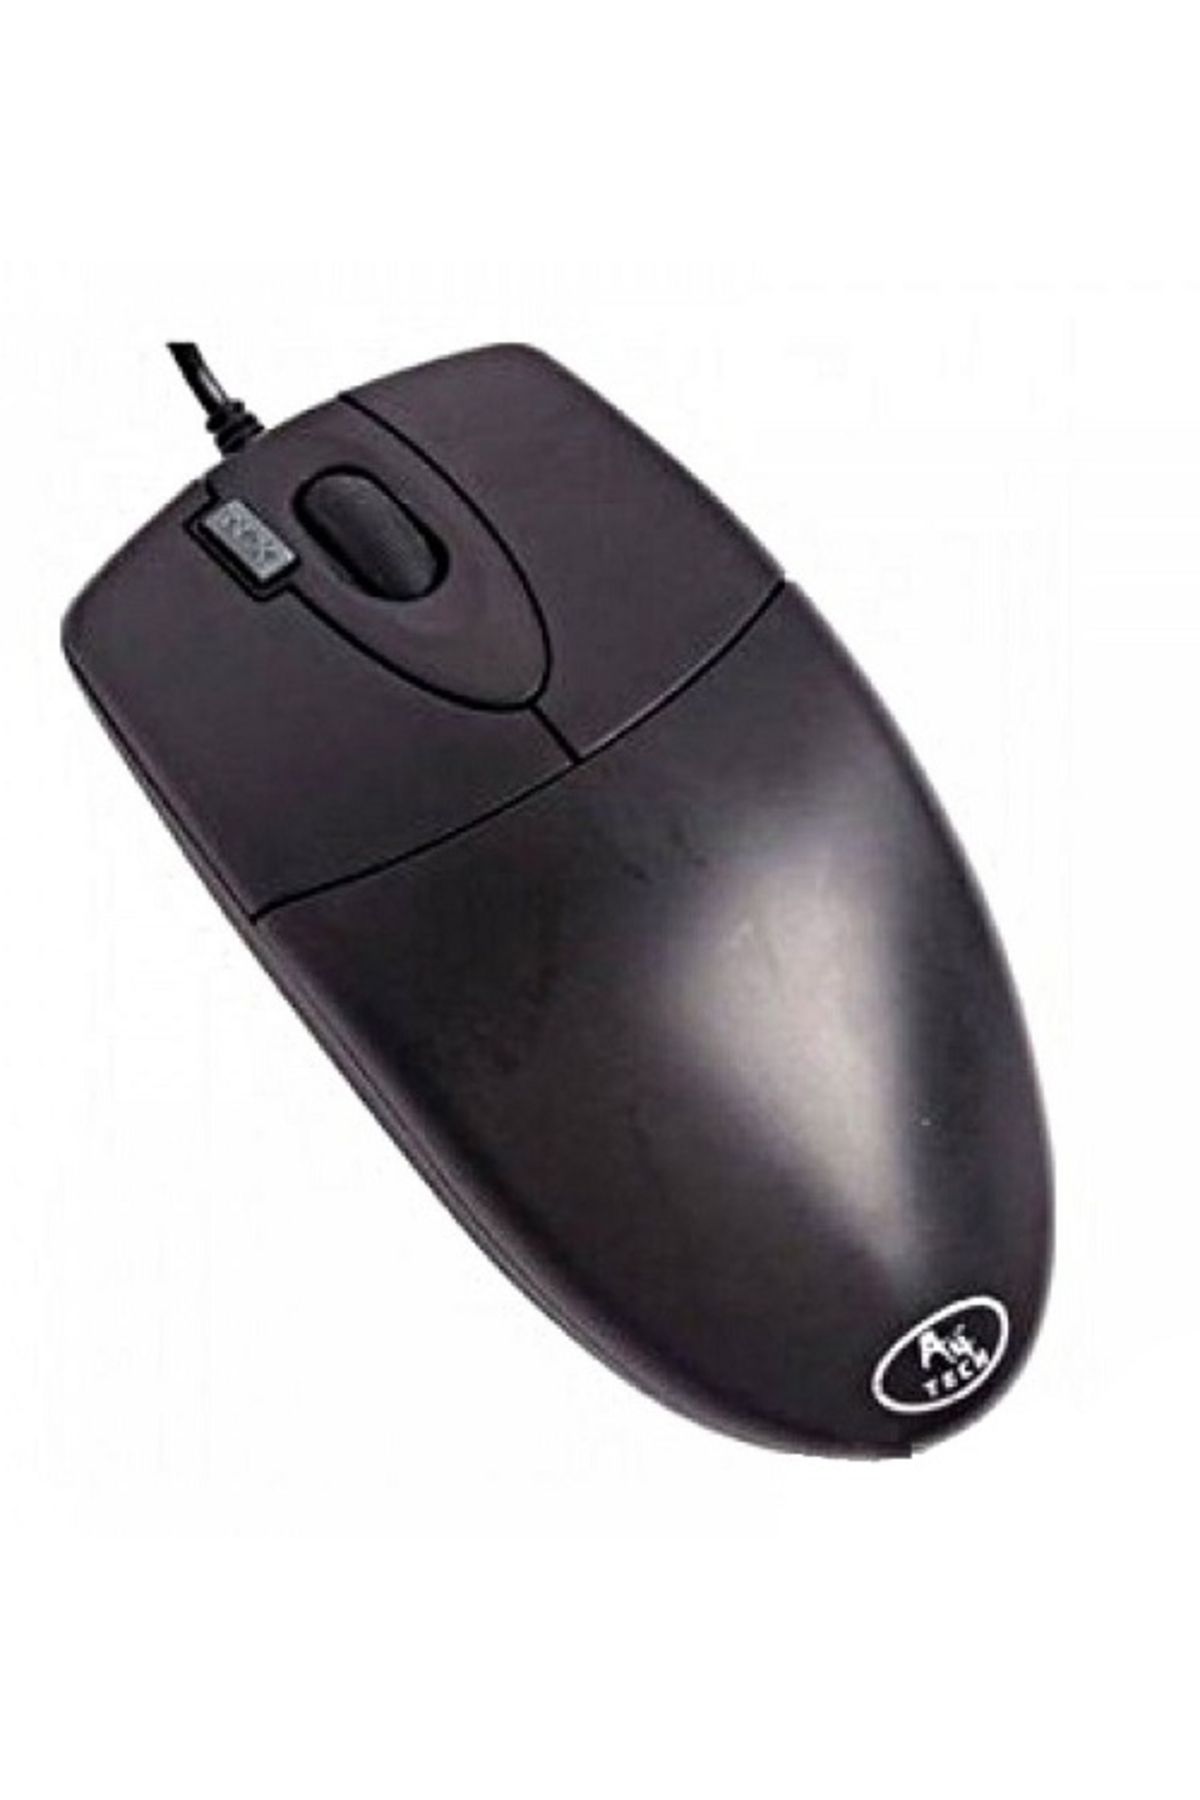 A4 Tech Op620d Usb Optik Kablolu Mouse Siyah